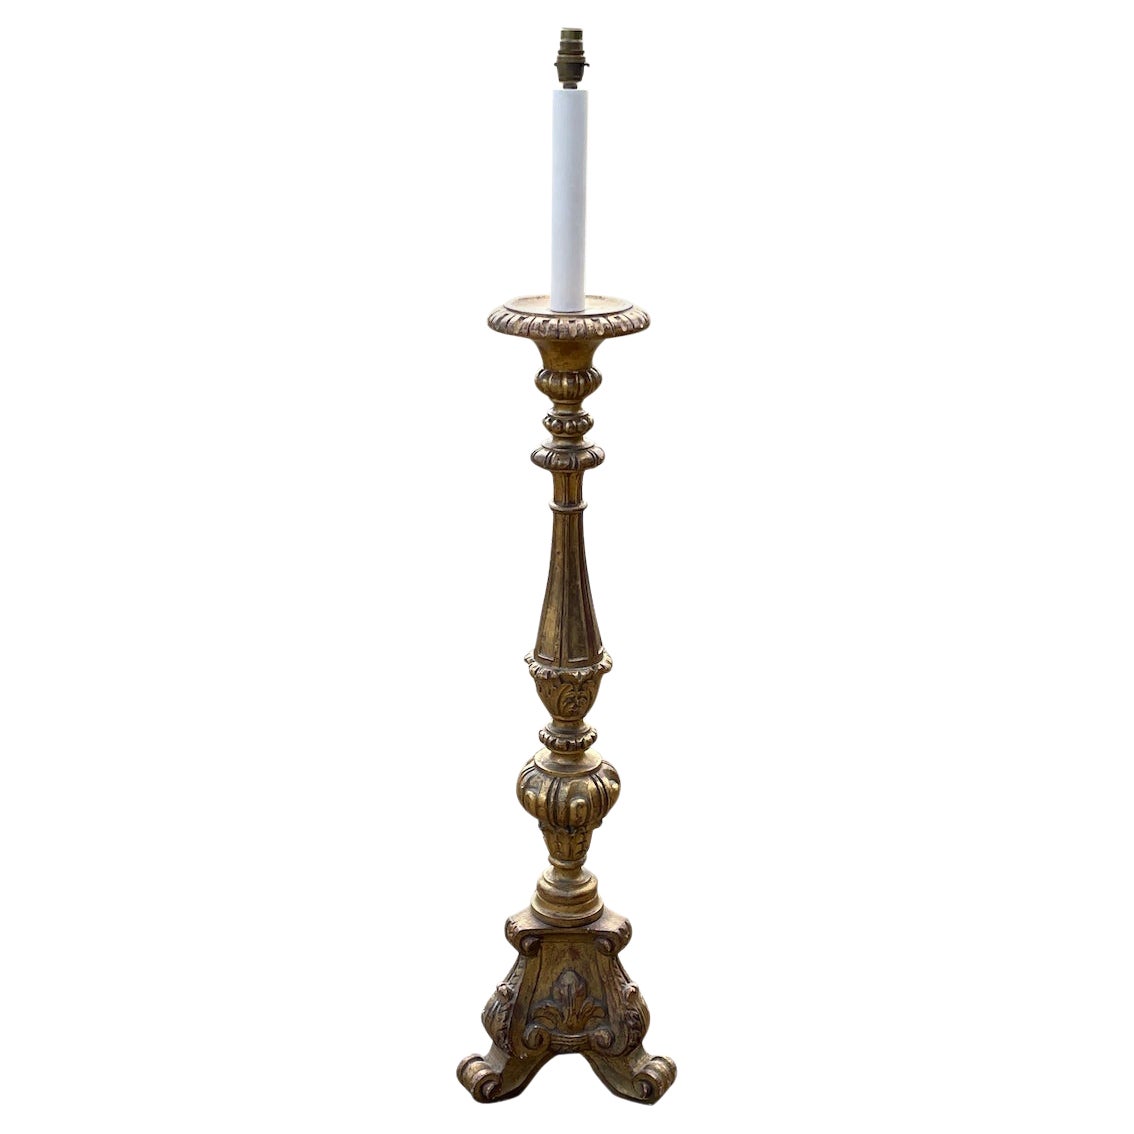 Lampe sur pied Torchere italienne dorée Fleur de Lys 128cm 4ft 21/2"" high